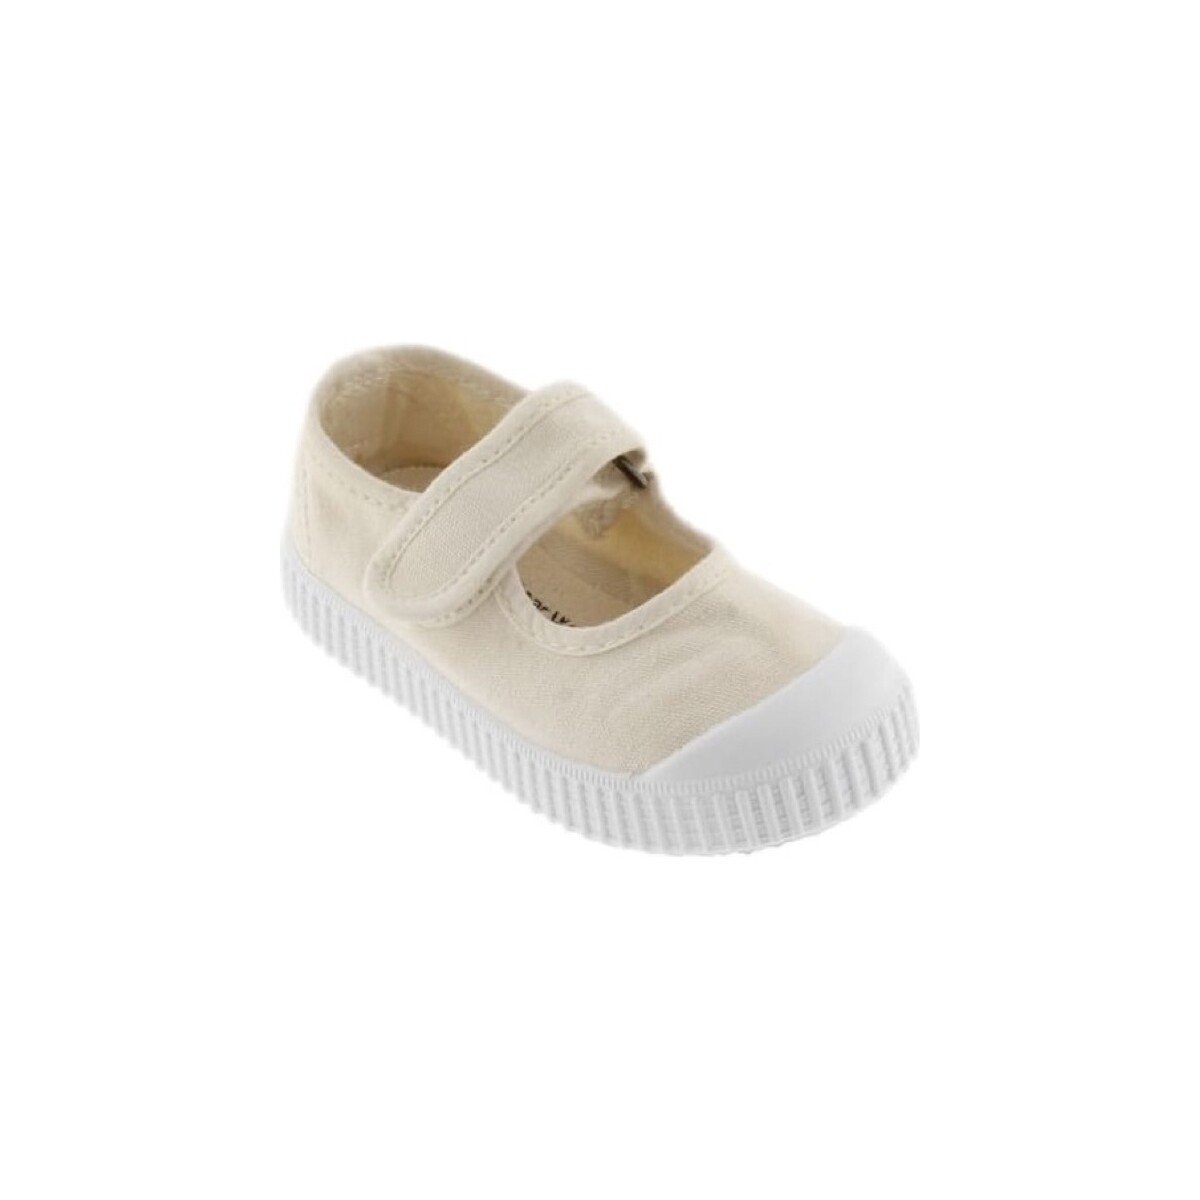 Victoria Beige Kids Shoes 36605 - Cotton qM1TDGXq